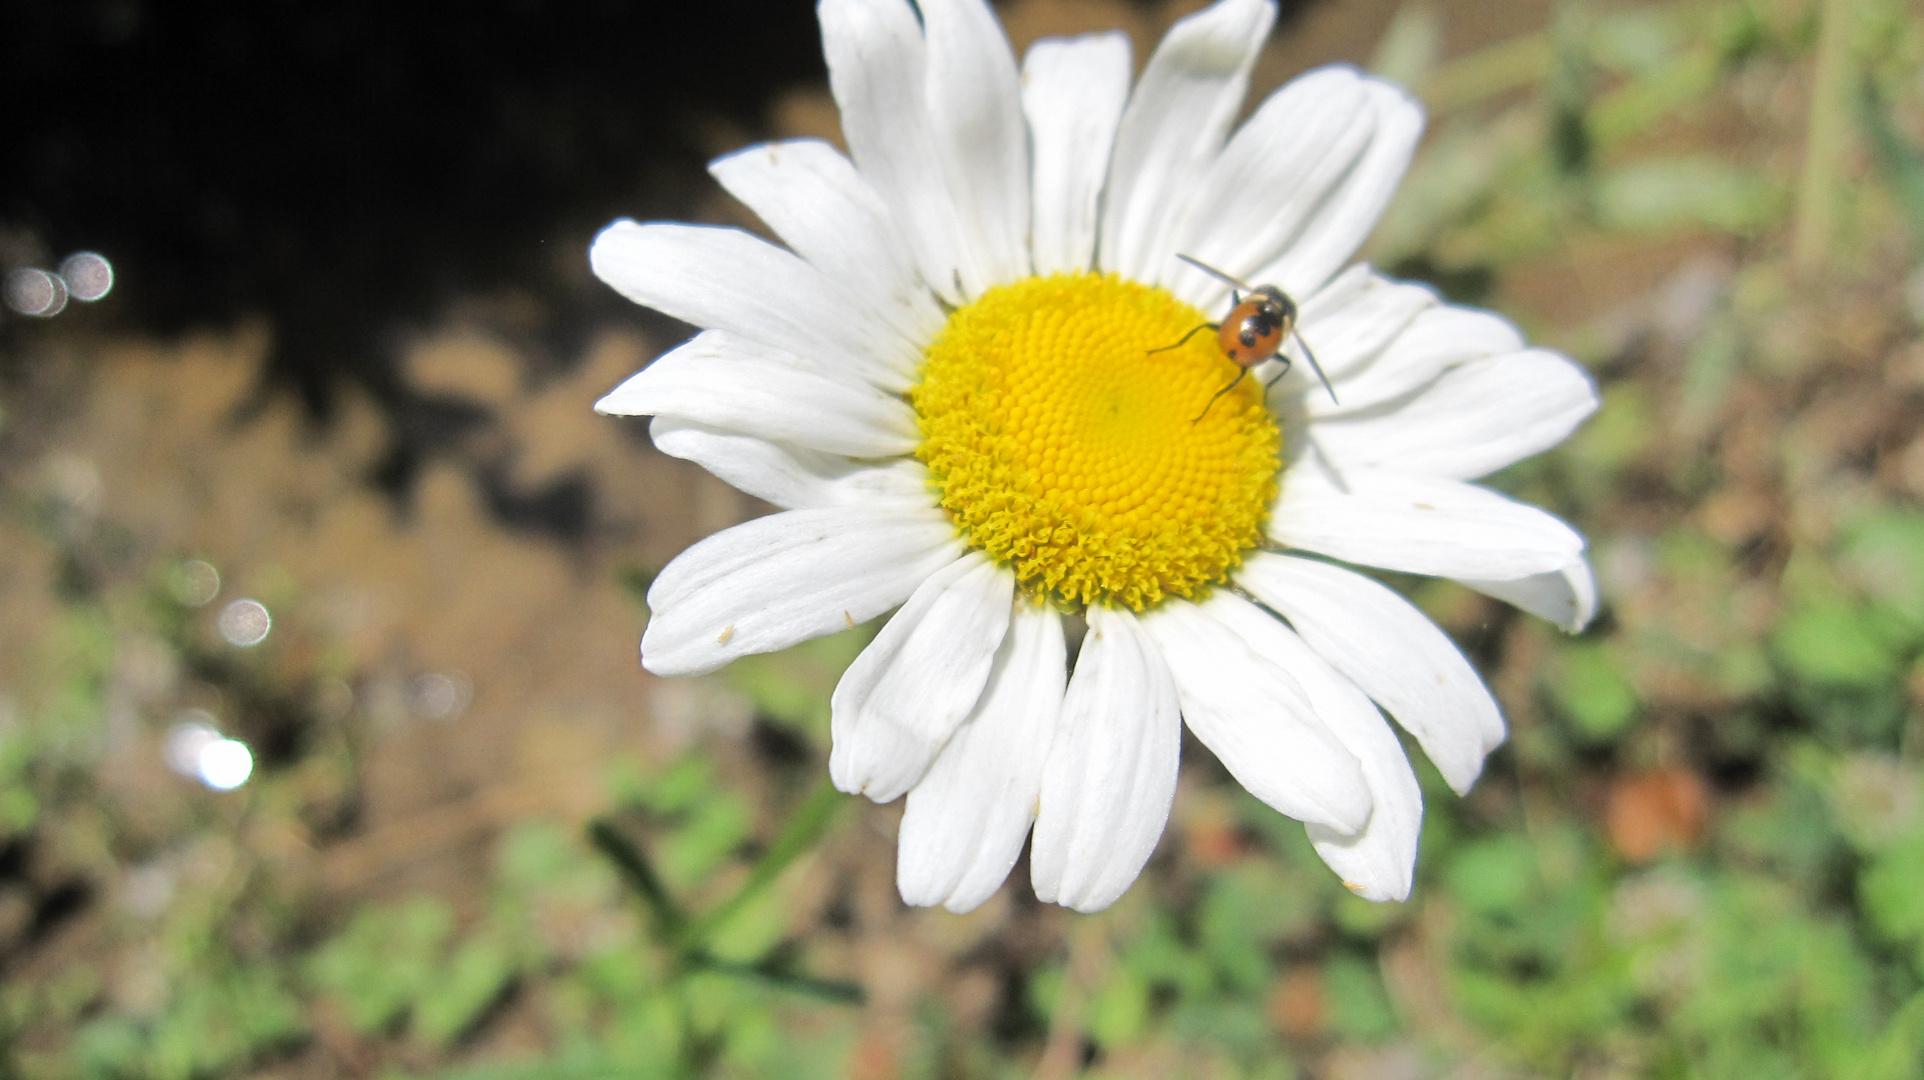 Daisy with Bug